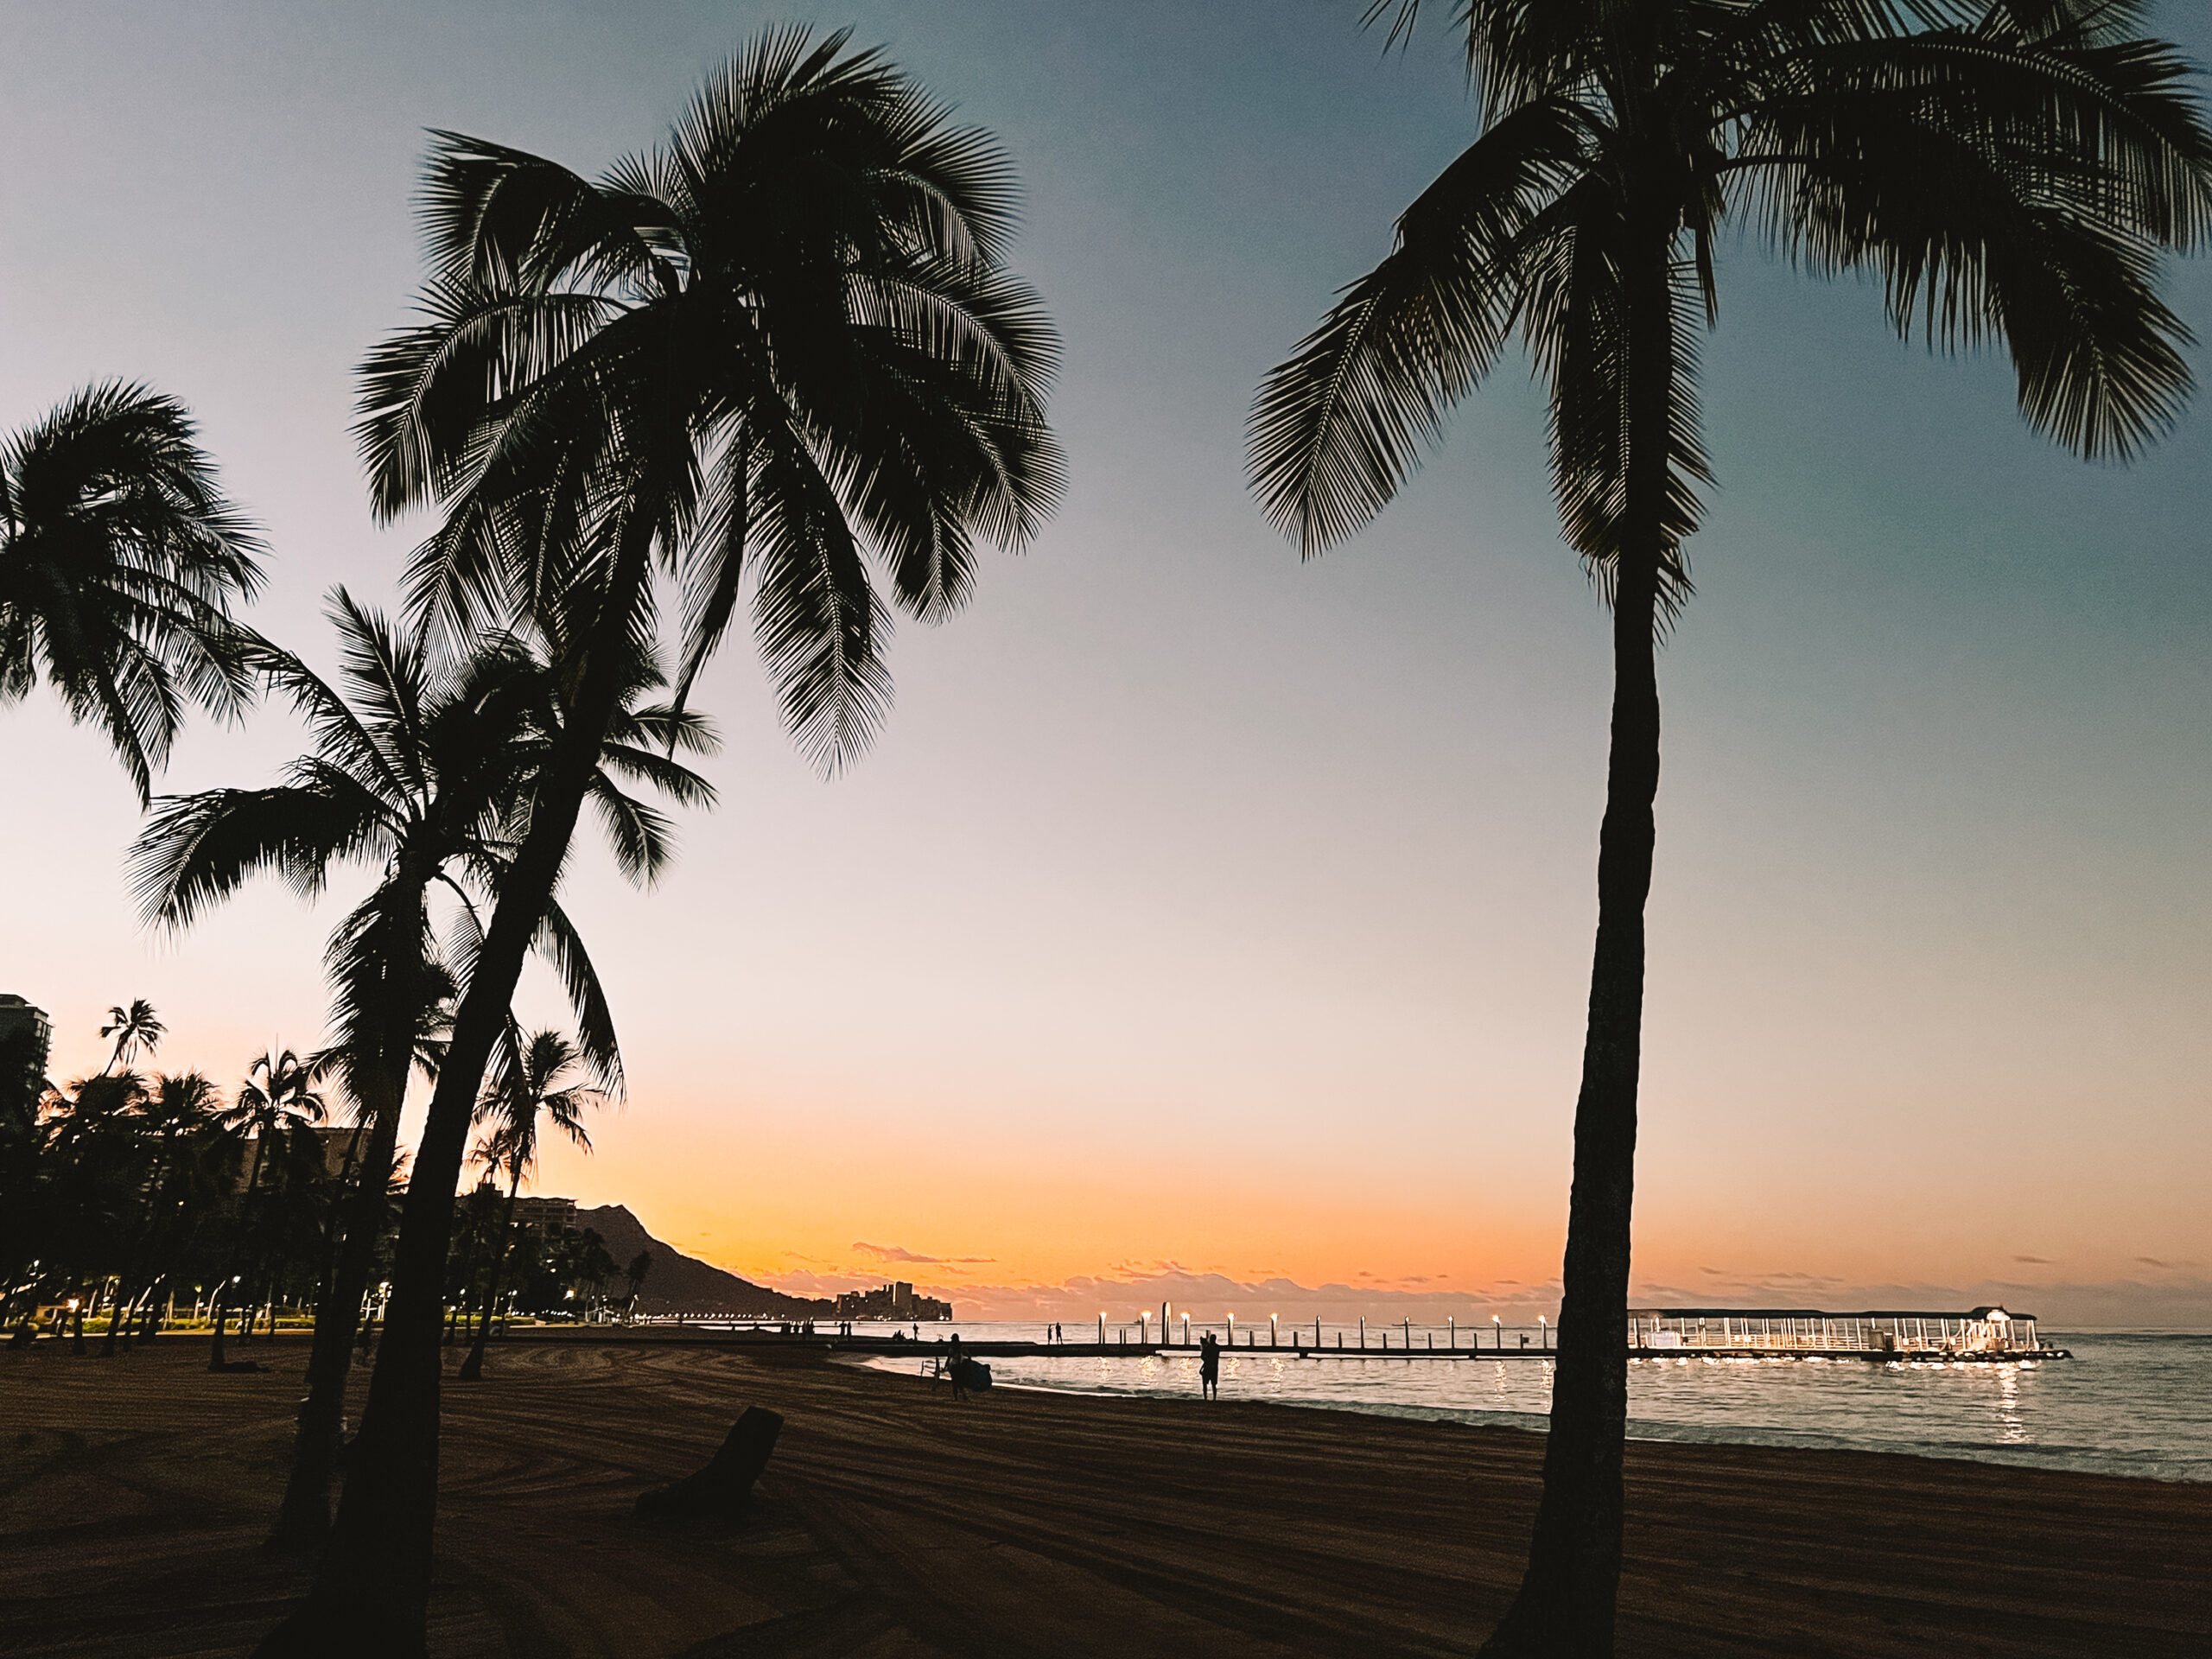 Waikiki Beach at sunrise in Oahu, Hawaii where morning runs were magical!